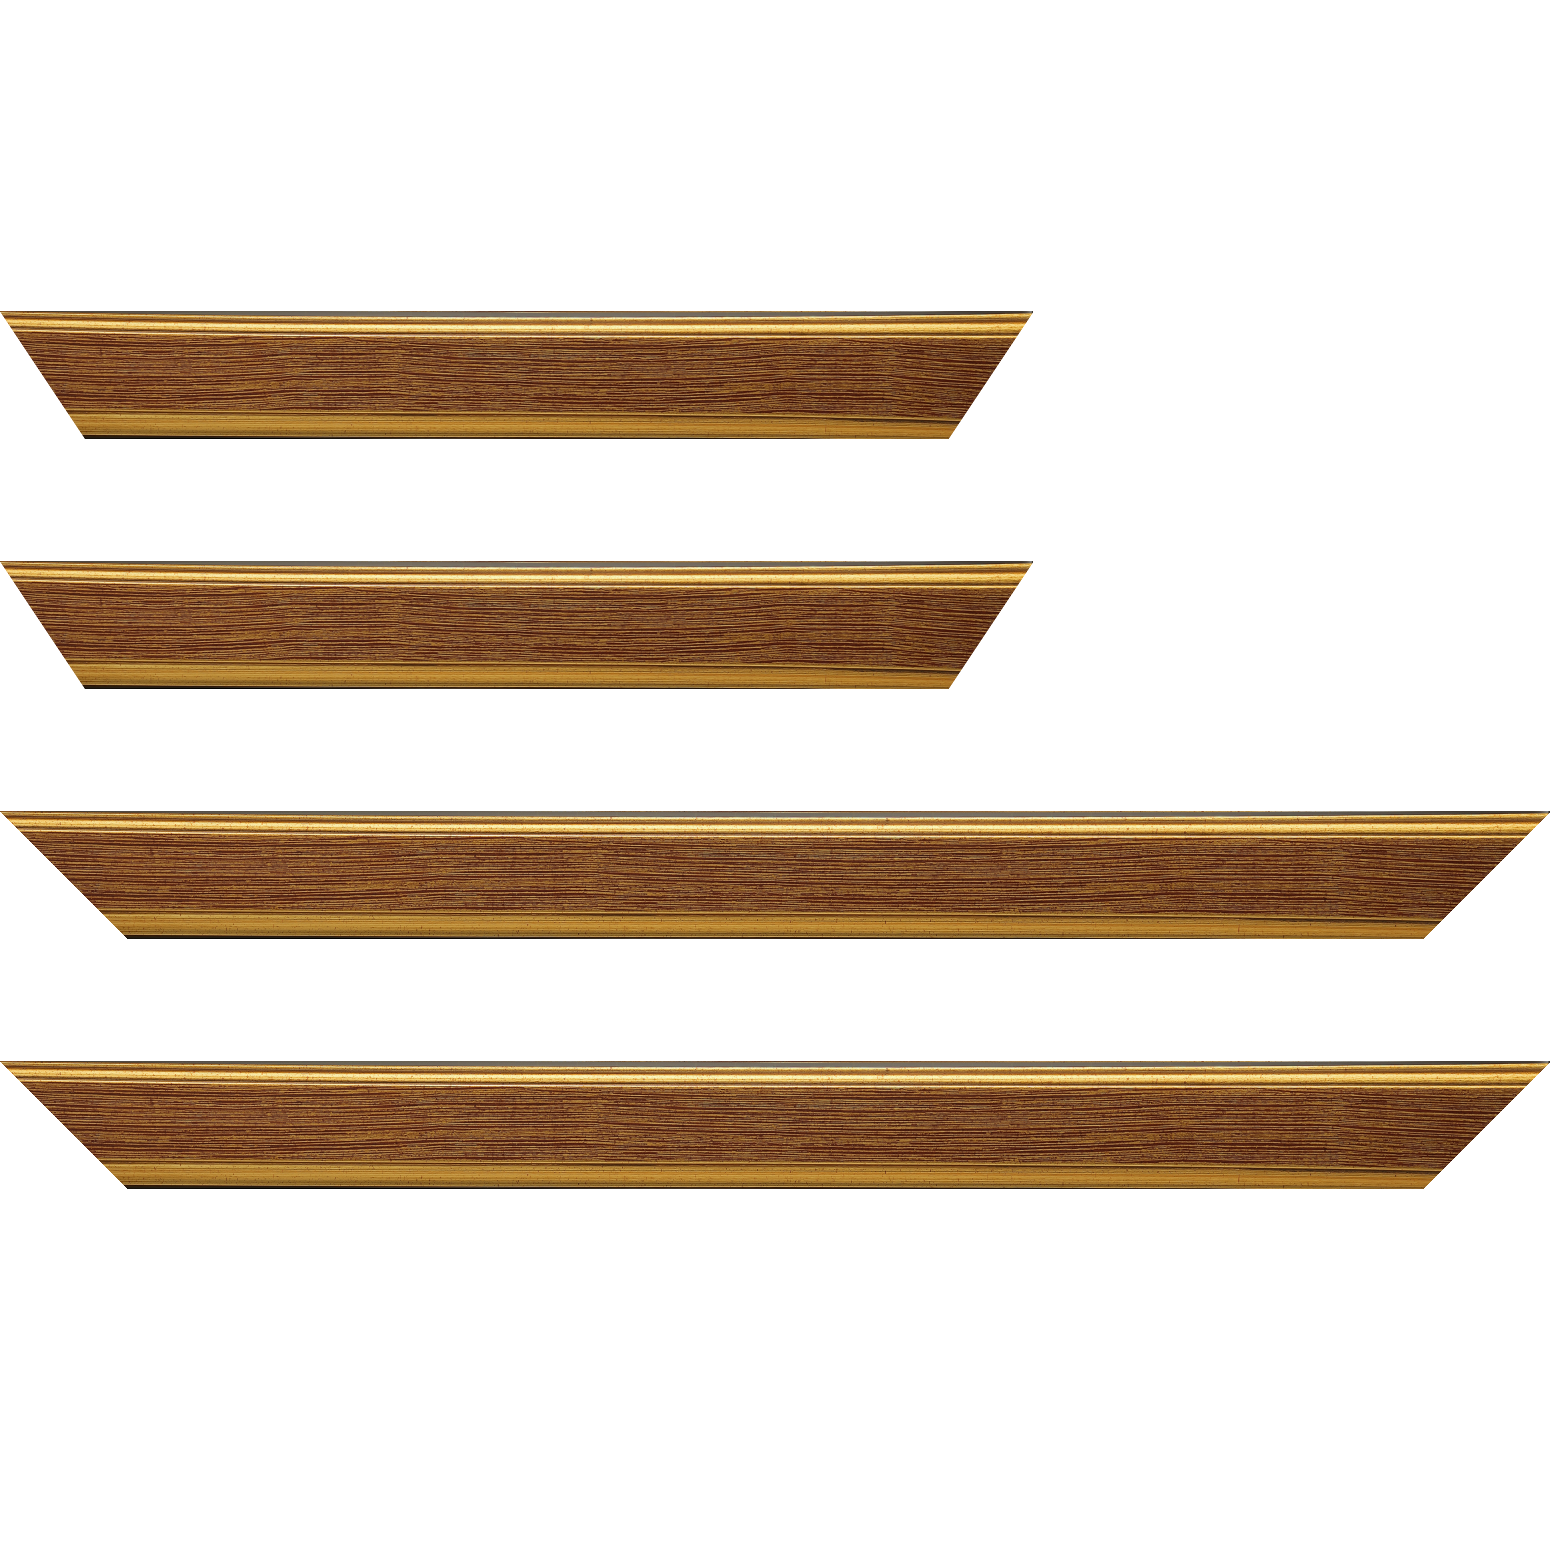 Baguette bois profil plat largeur 3.5cm couleur or fond bordeaux filet or